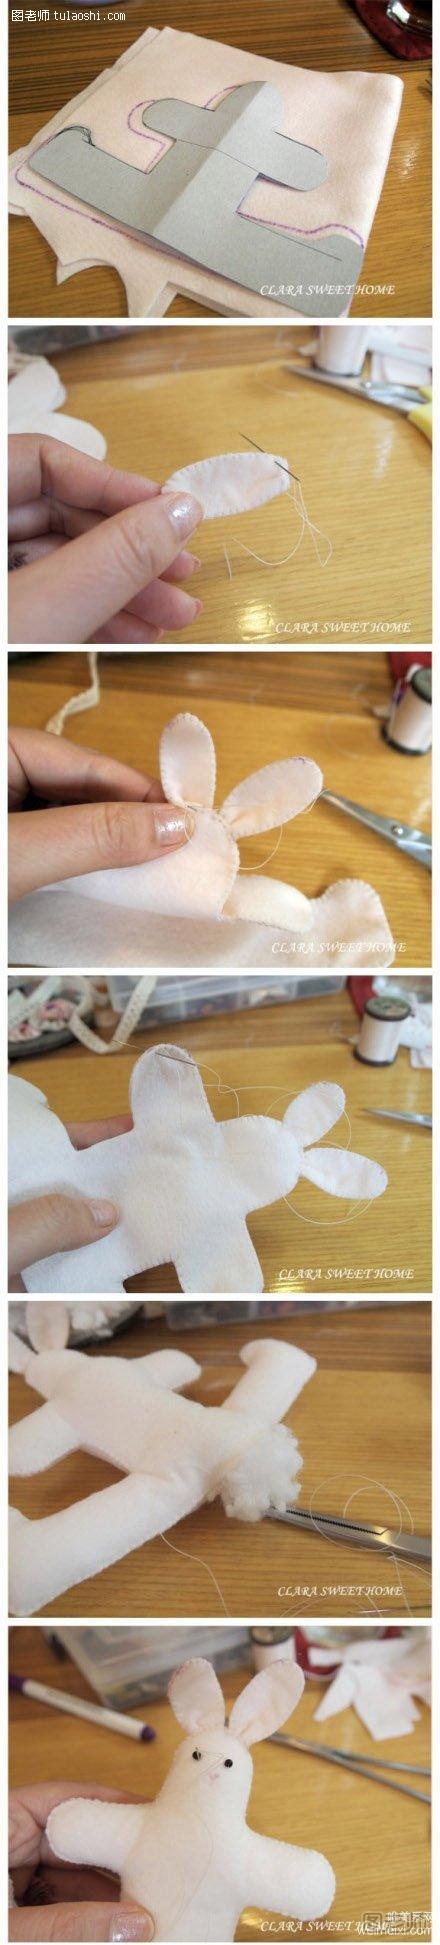 可爱小兔子绒布玩偶手工制作教程,diy图示